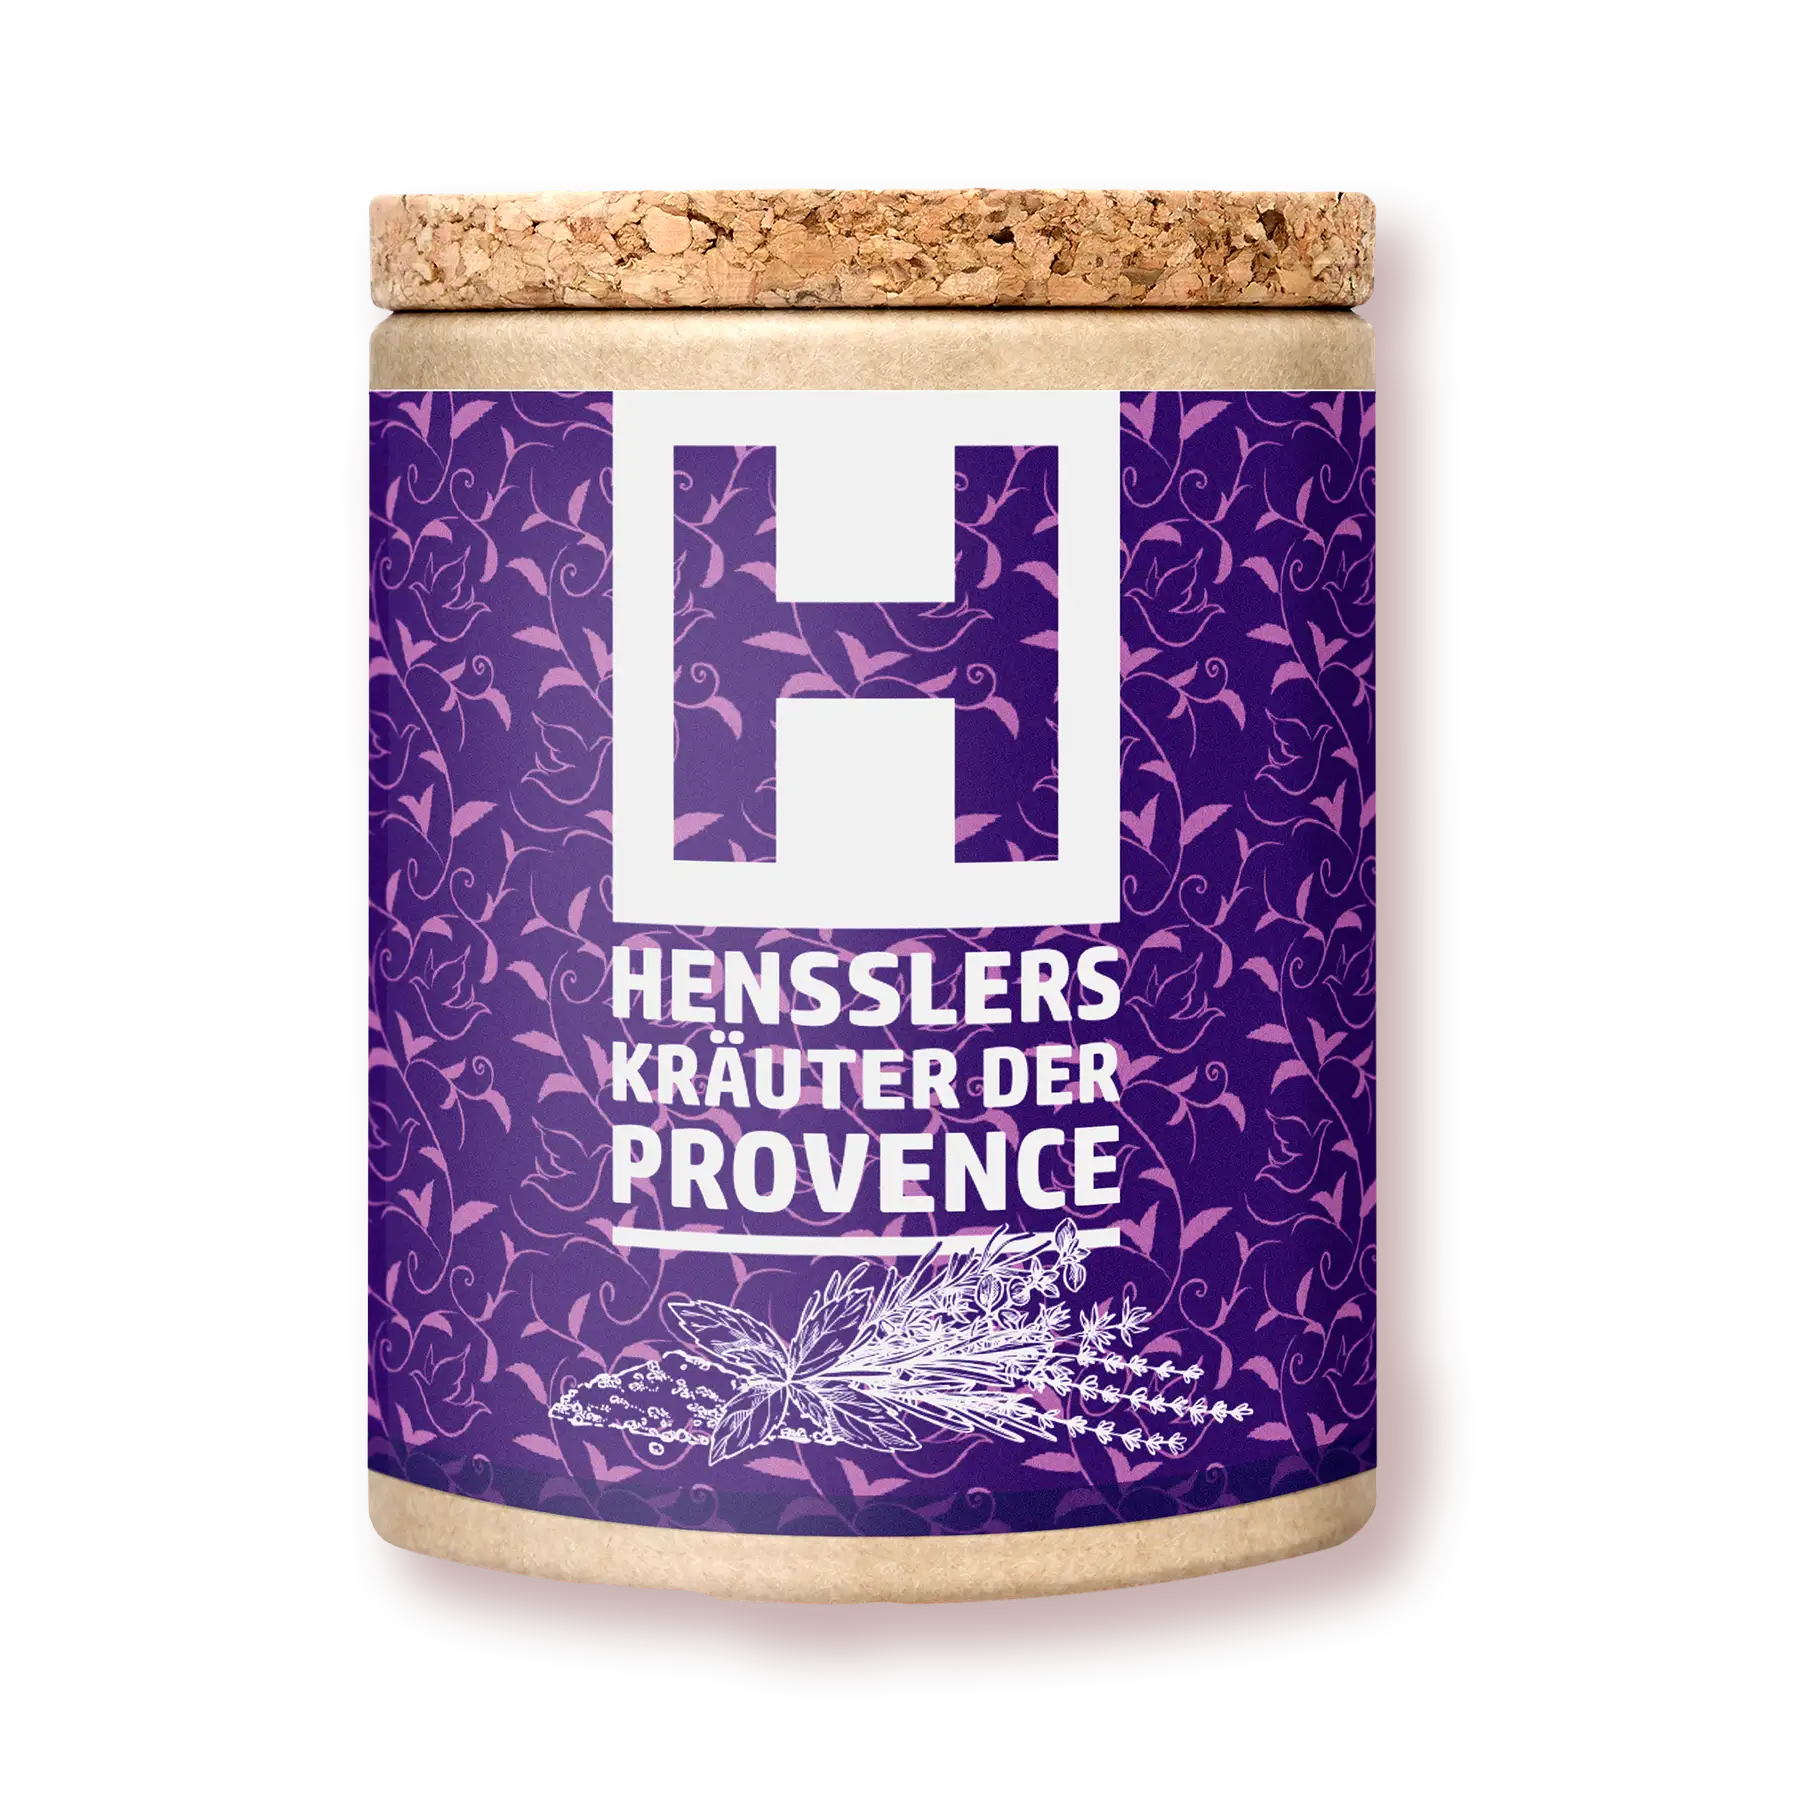 Hensslers Kräuter der Provence online kaufen